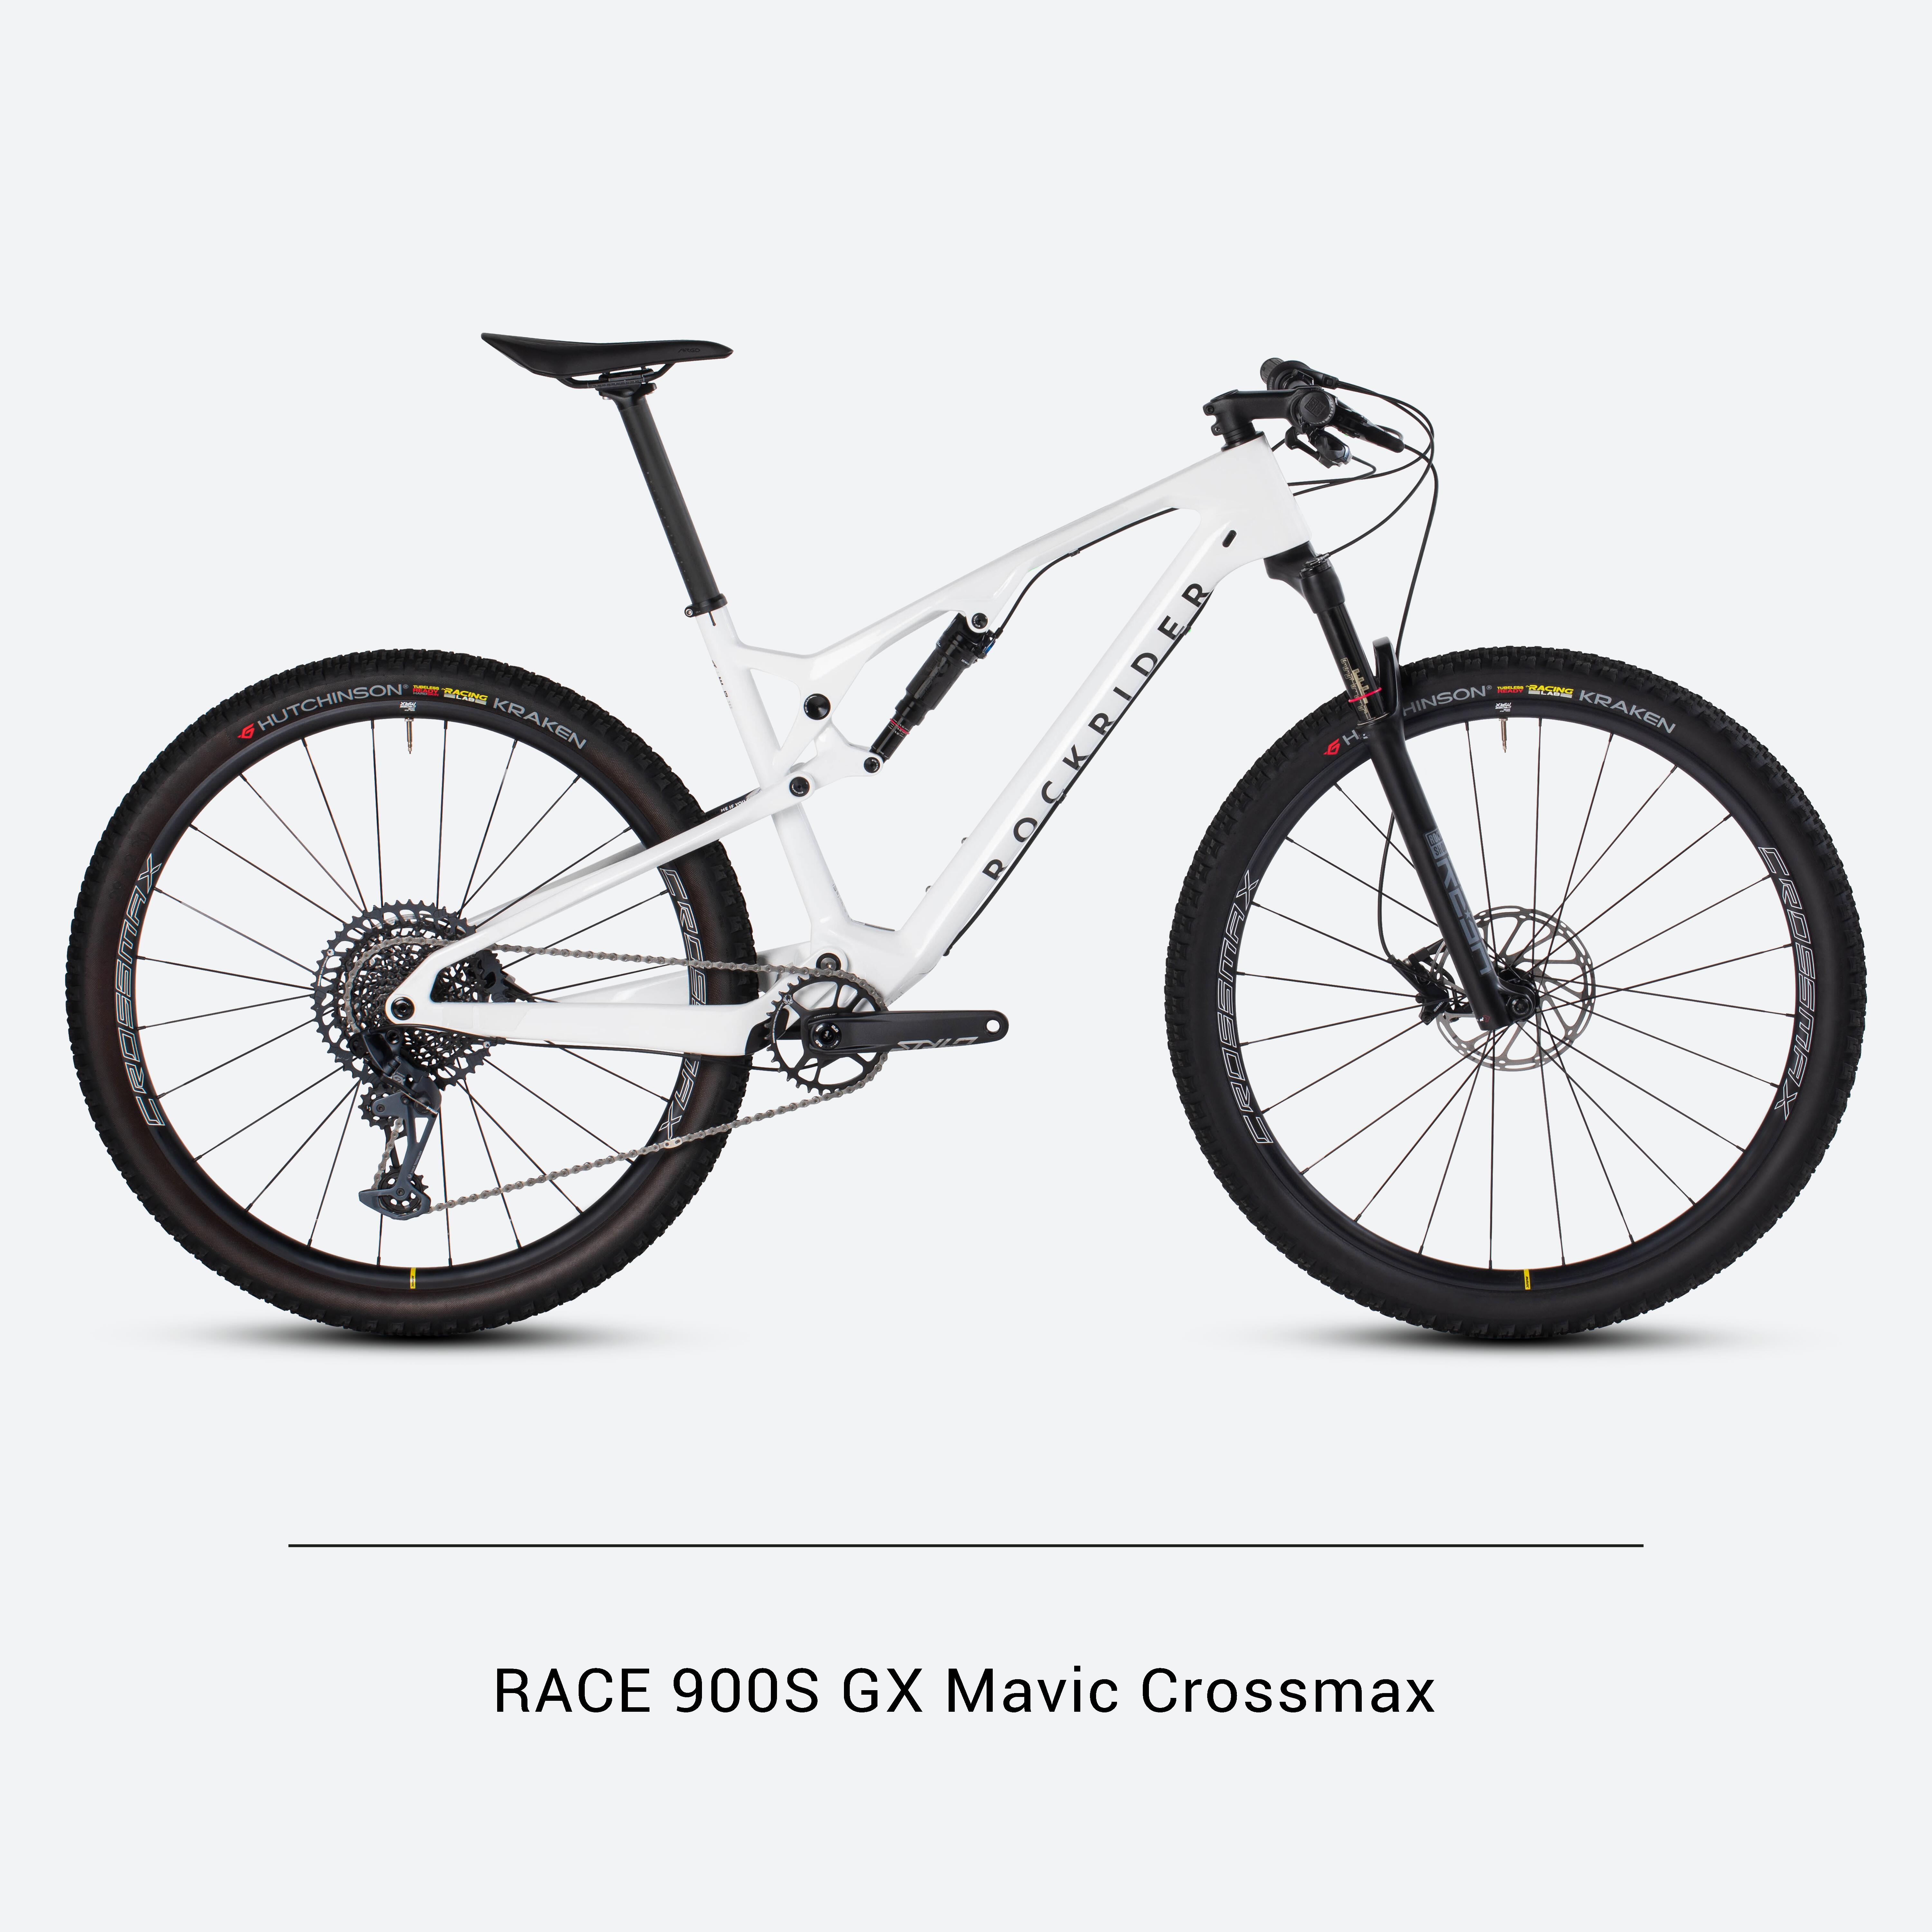 Bicicletă MTB cross country RACE 900S GX Eagle, roți Mavic Crossmax, cadru carbon 900S